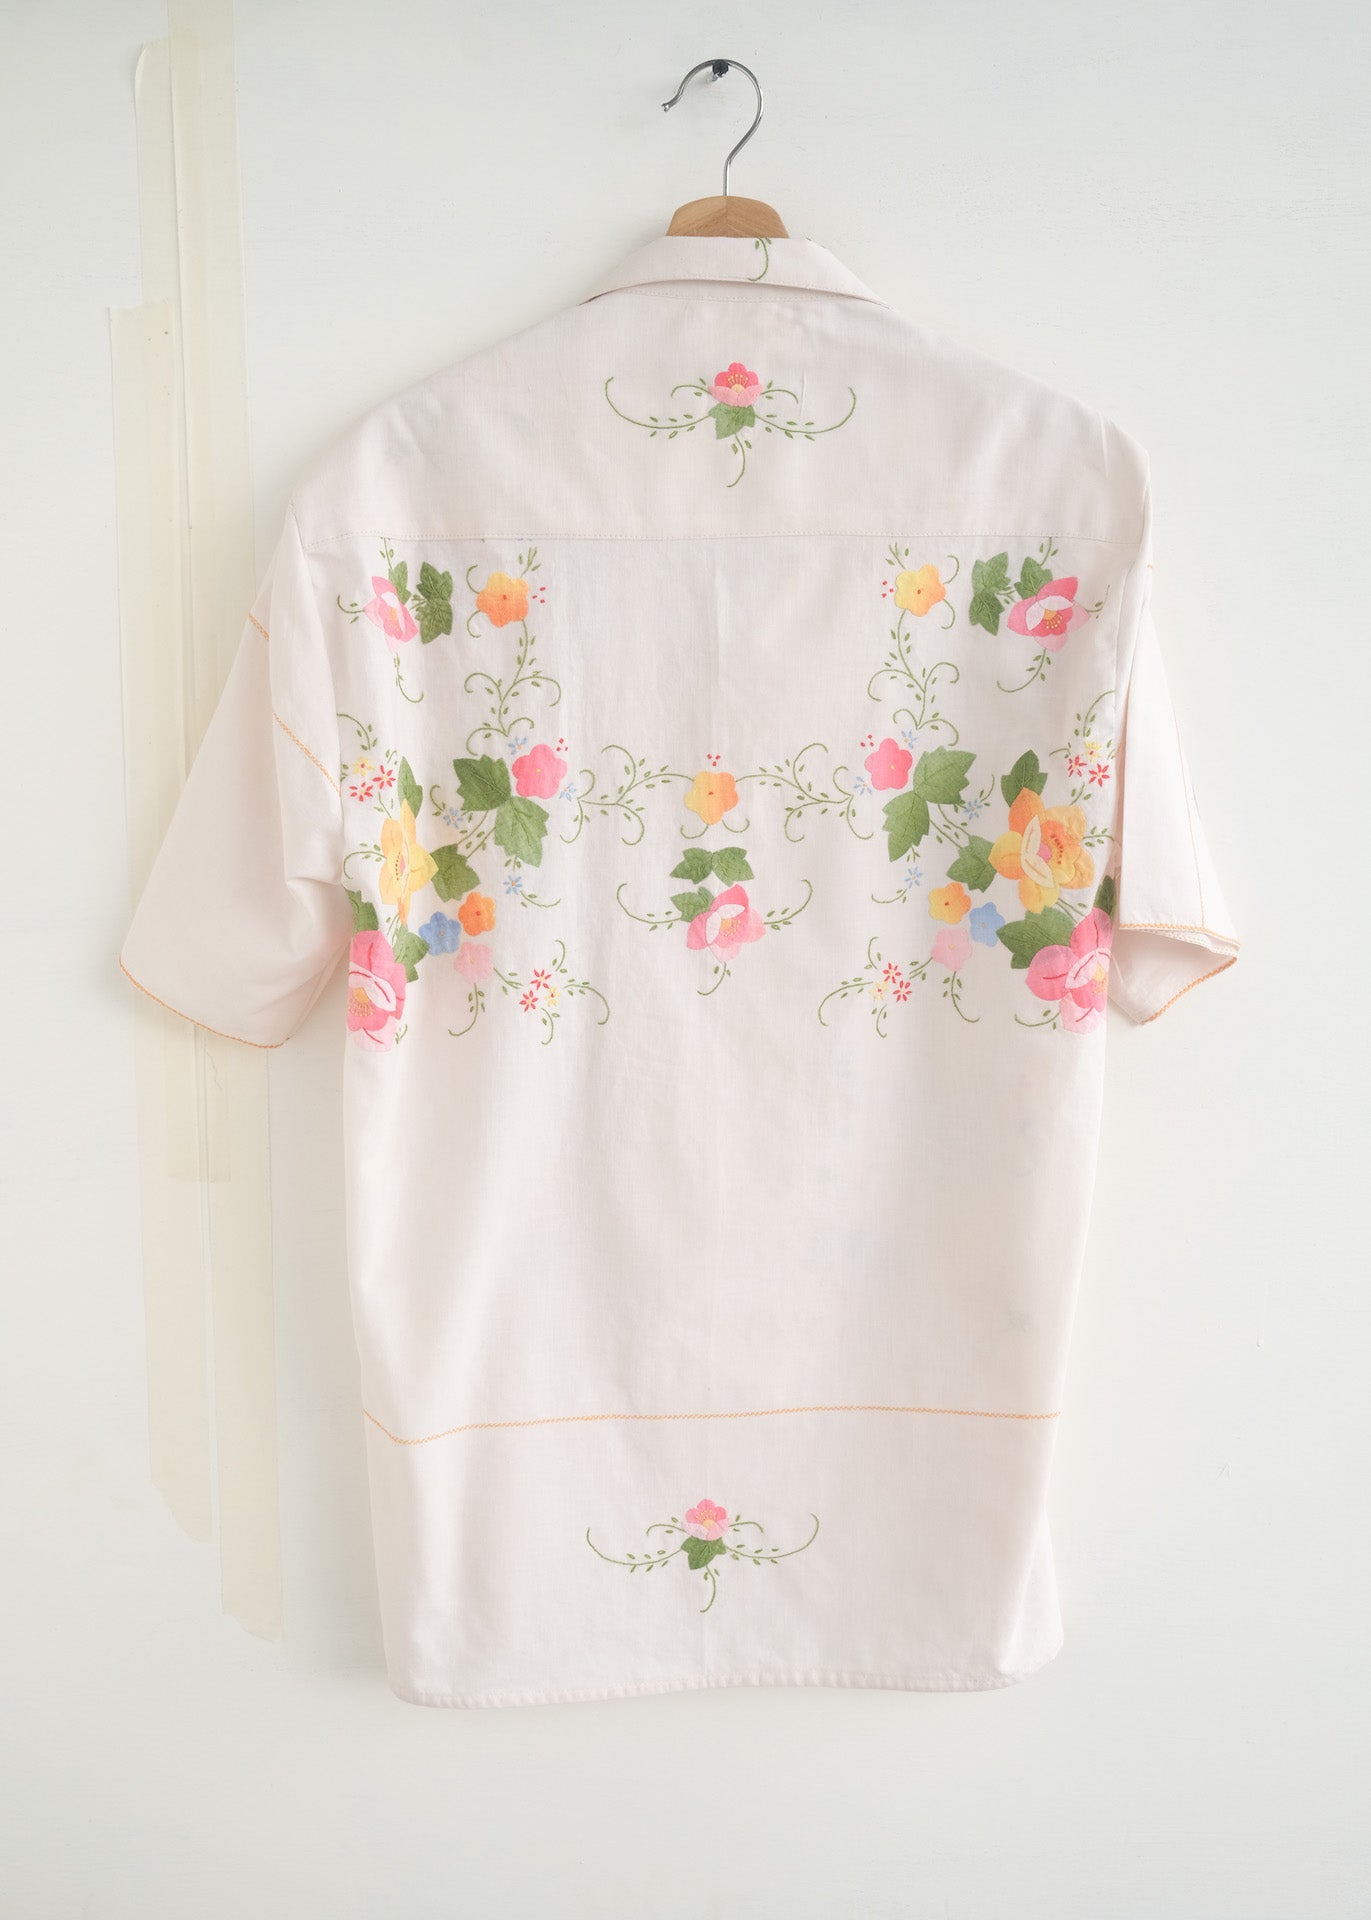 The Floral Appliqué Shirt - M